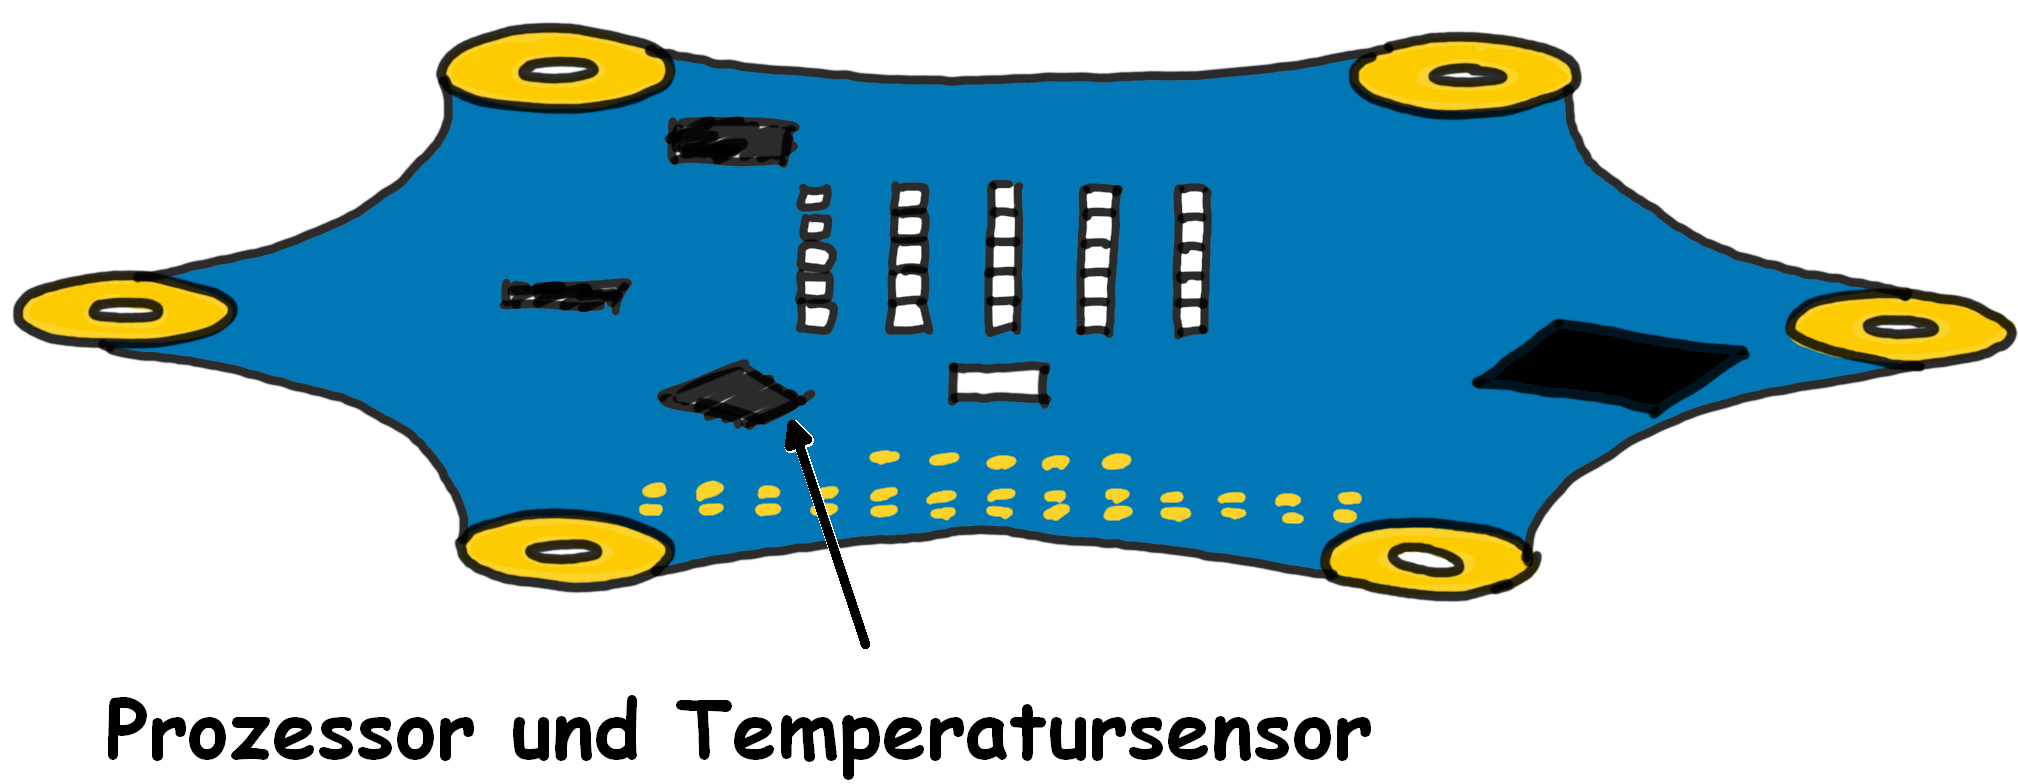 Calliope mit eingezeichnetem Temperatursensor Achsen